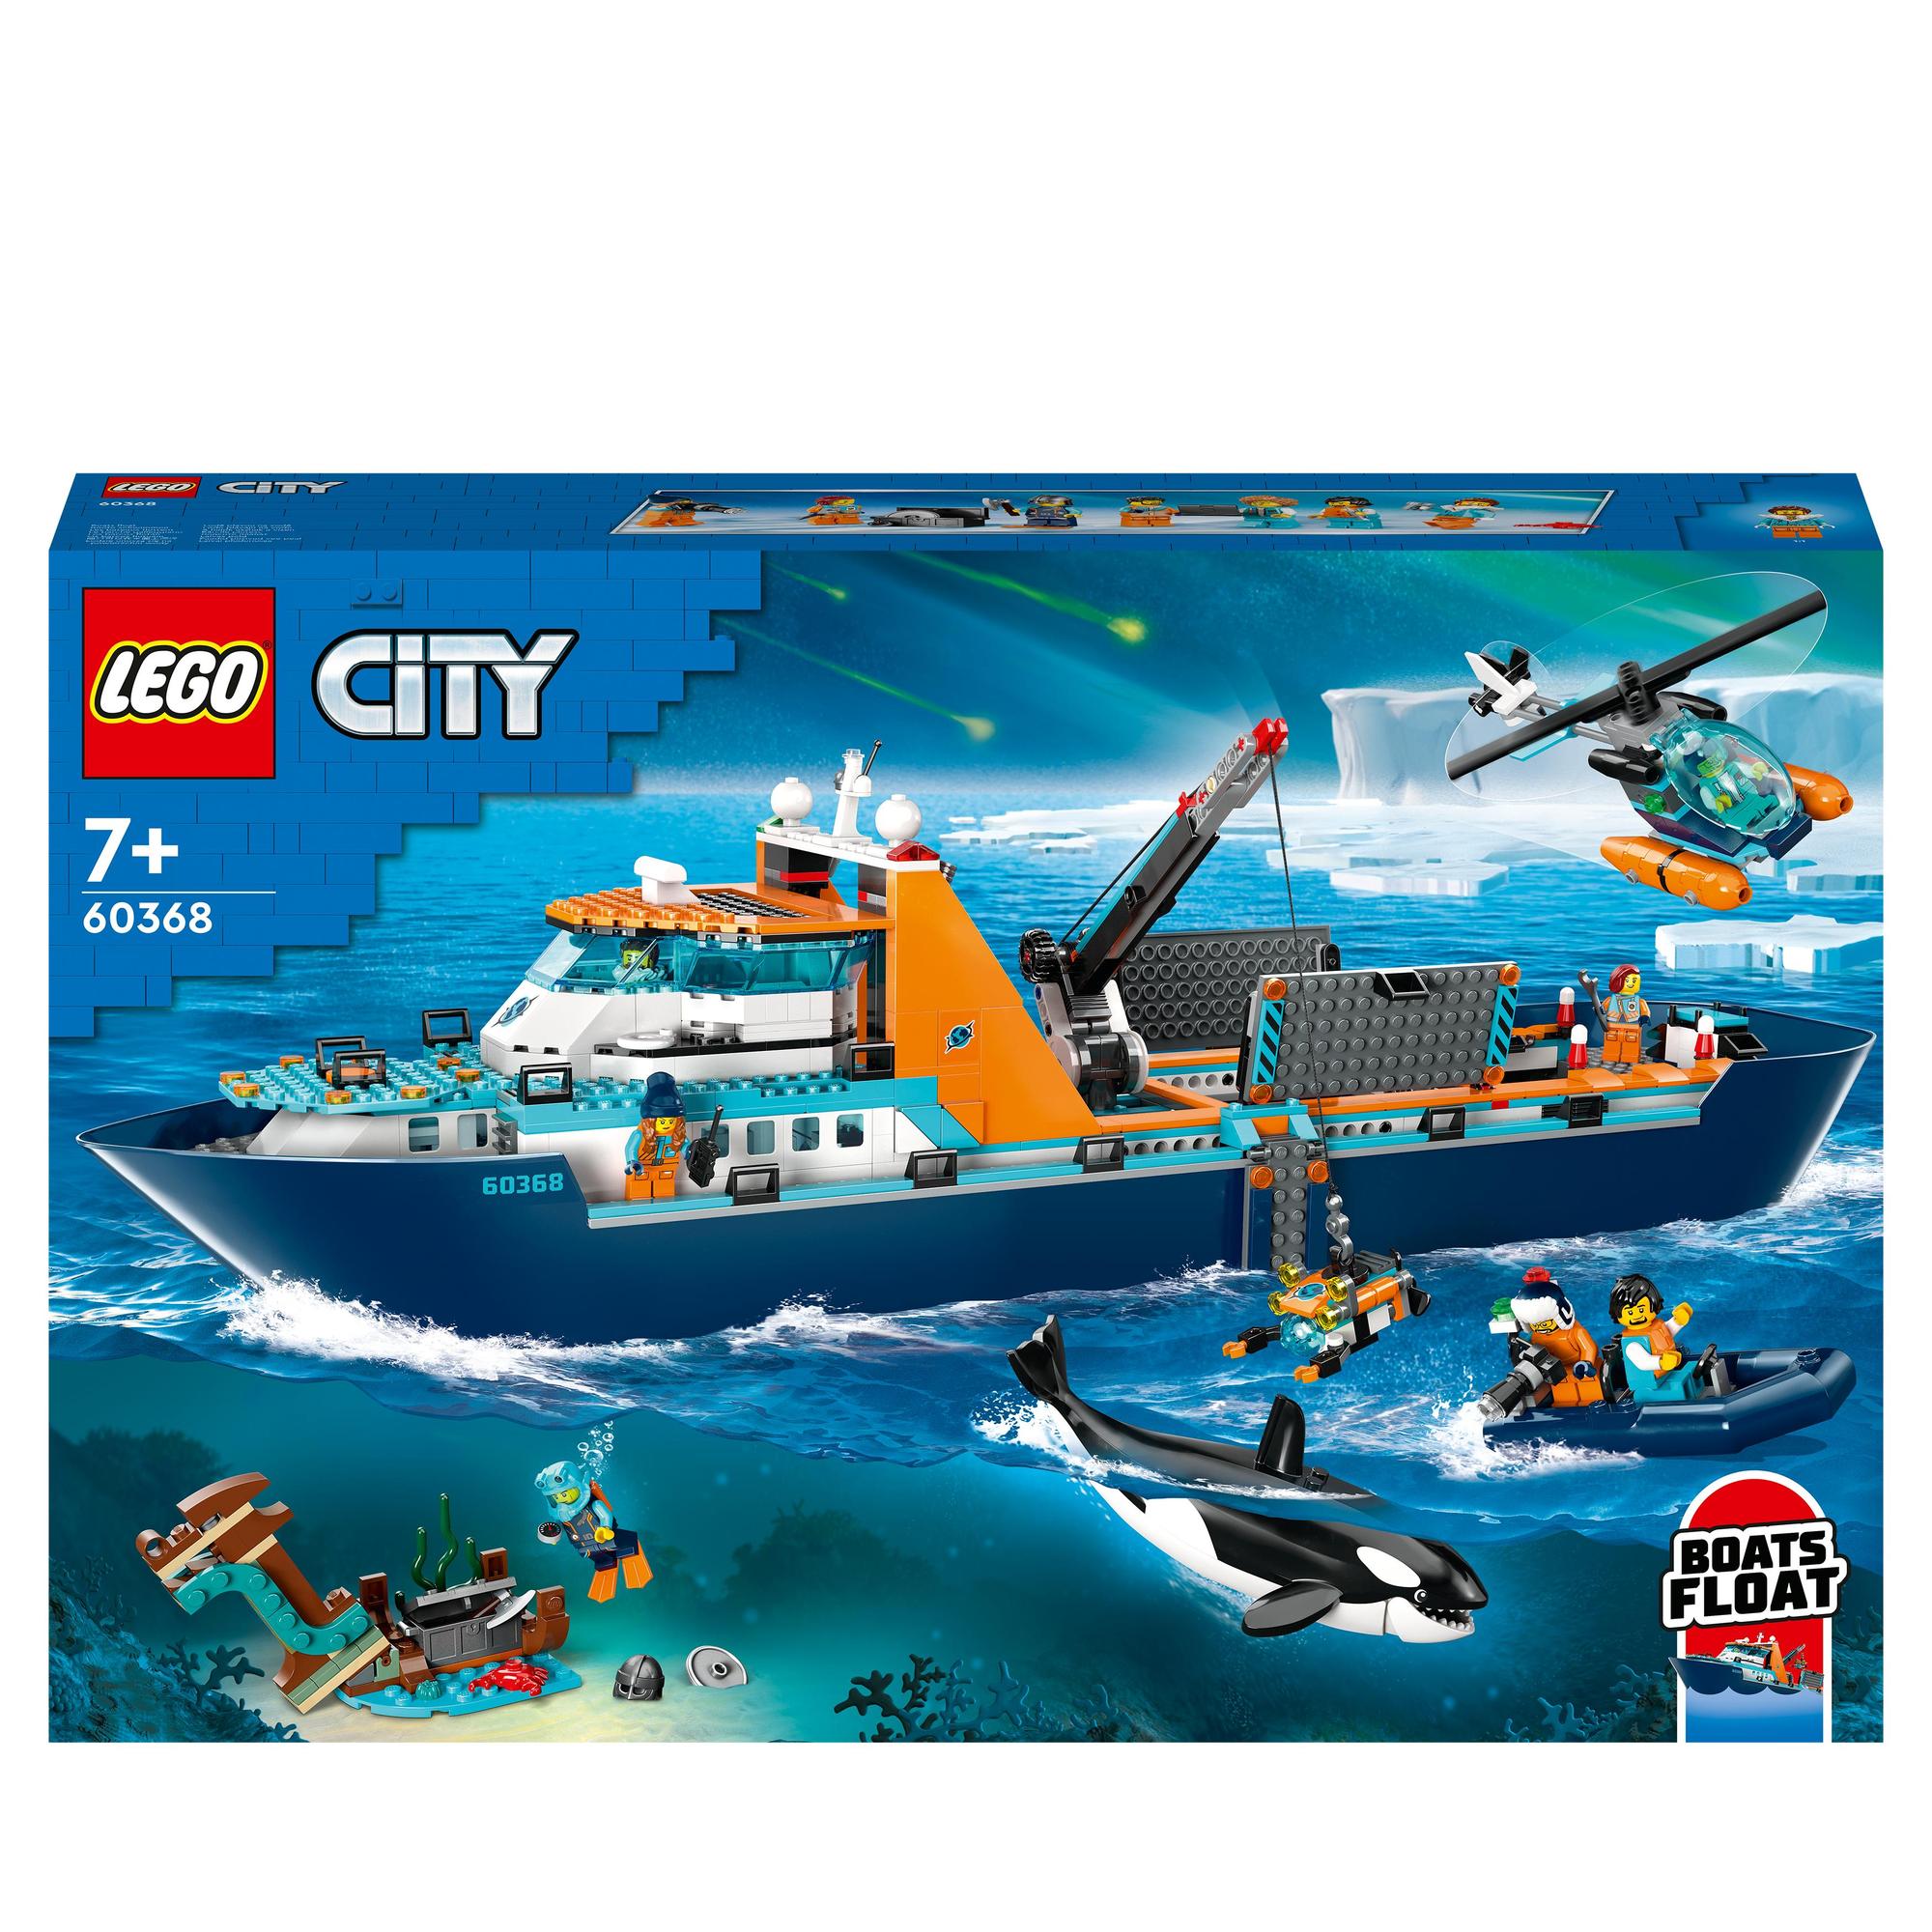 LEGO® | 60368 | Arktis-Forschungsschiff